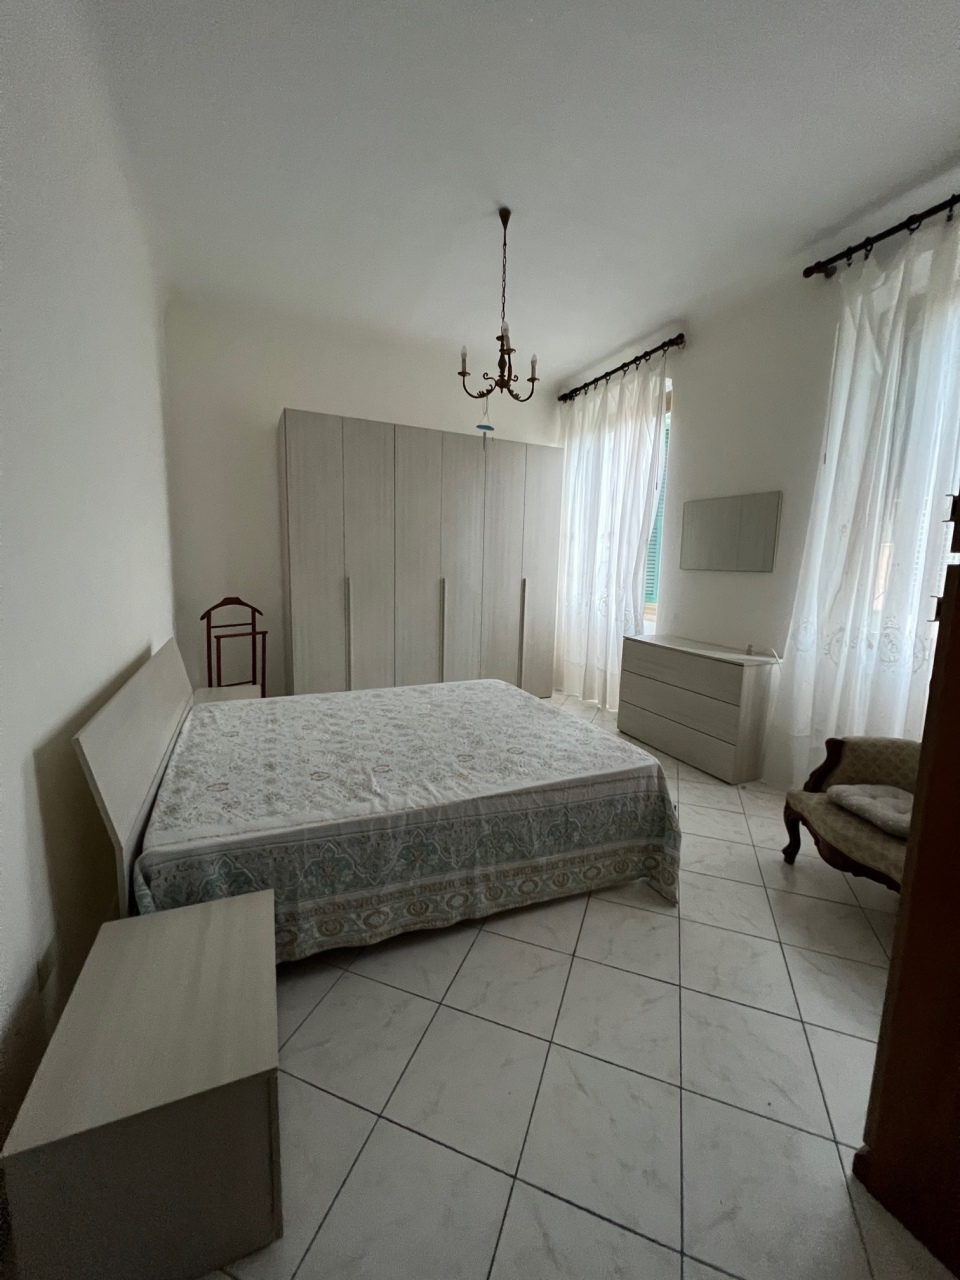 Appartamento in affitto a La Spezia, 3 locali, prezzo € 520 | PortaleAgenzieImmobiliari.it